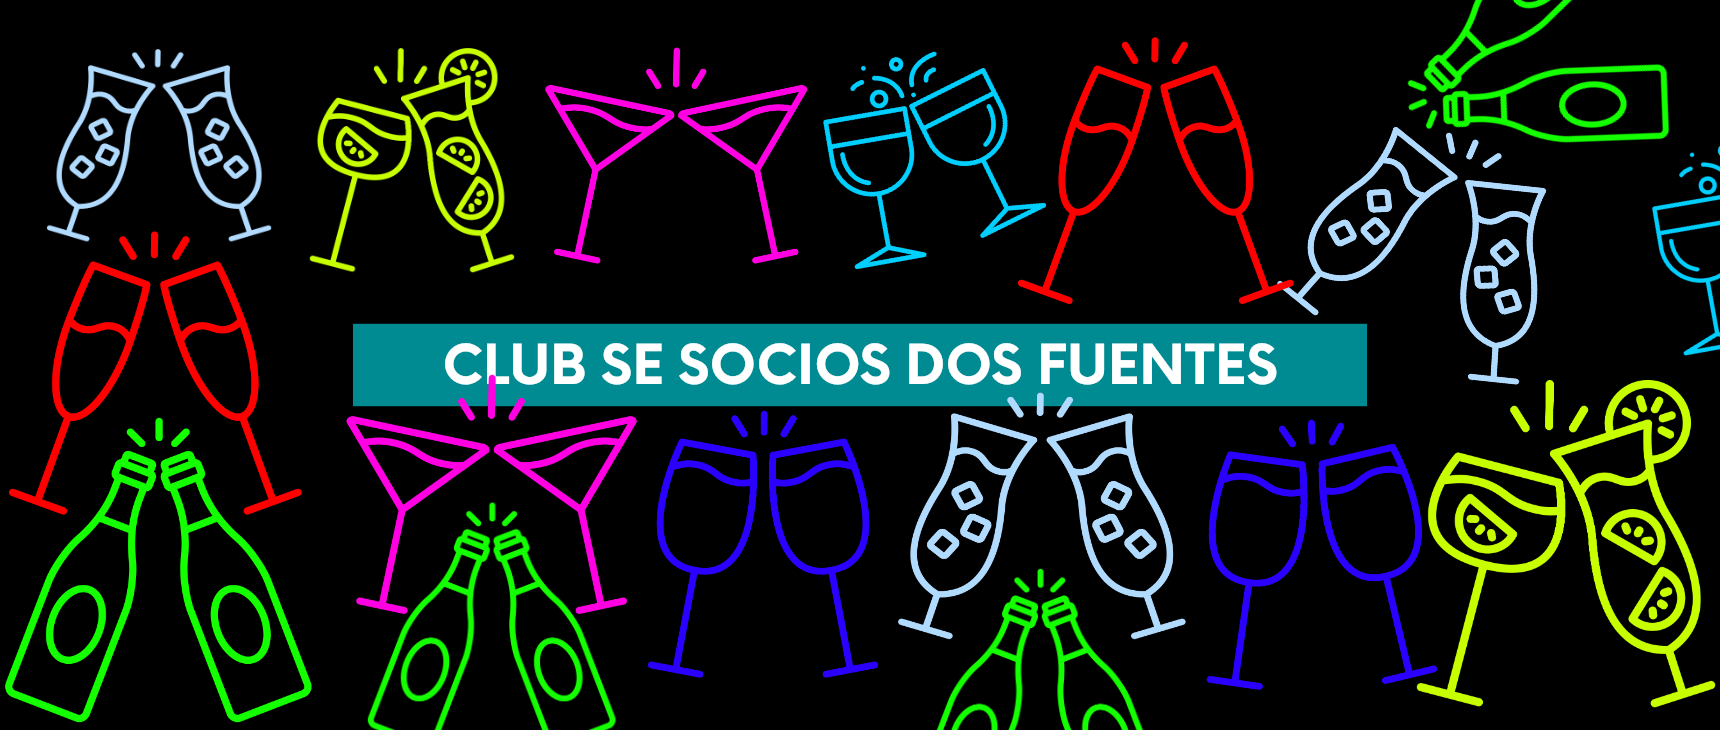 Club de Socios Dos Fuentes